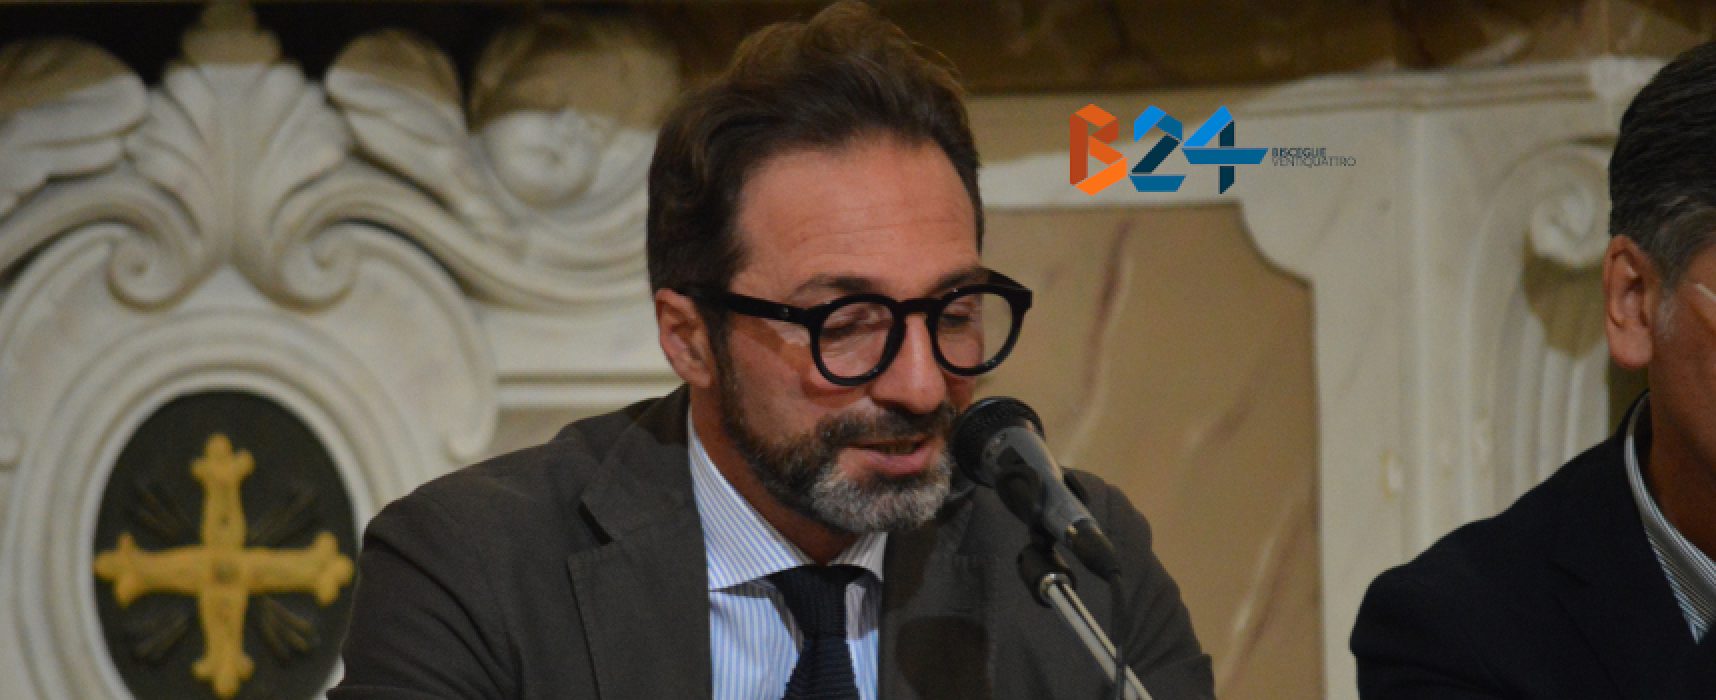 Casella replica a Spina: “Parte mio compenso al Poliambulatorio, contribuisca anche lui”